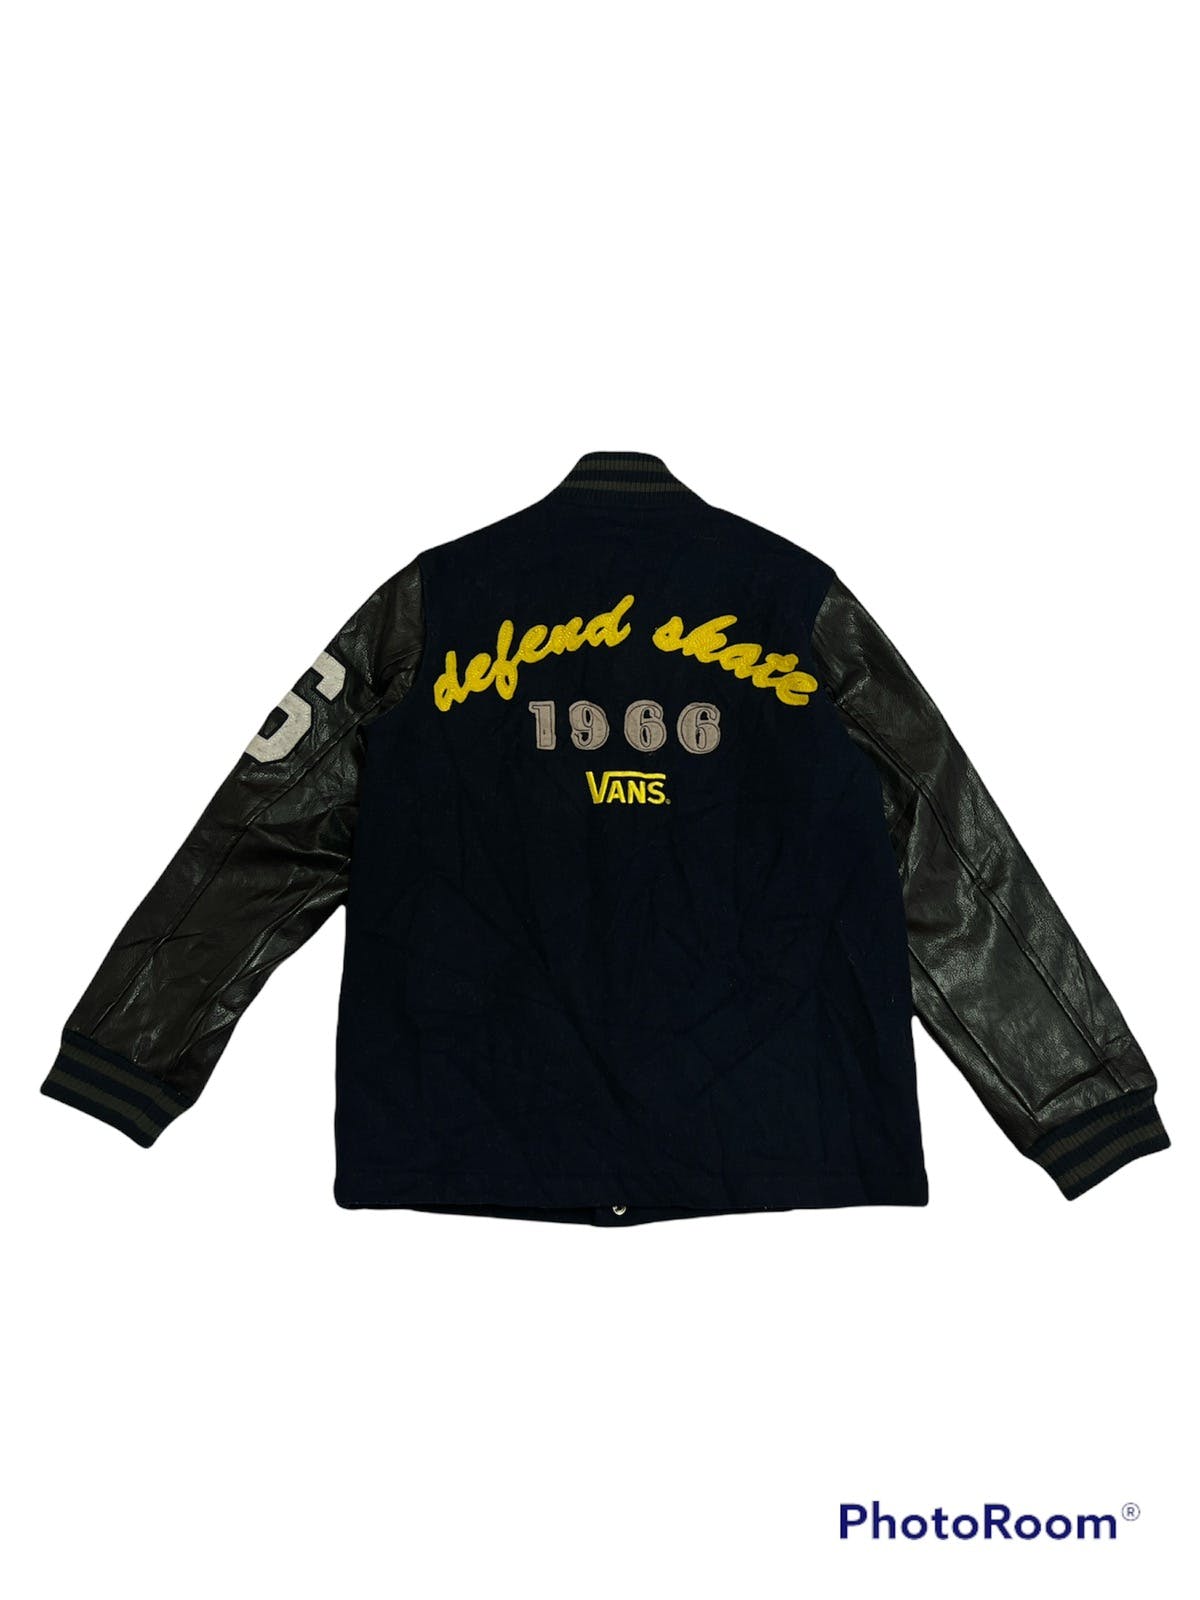 Vans Defend Skate 1966 Wool Varsity Jacket - 7